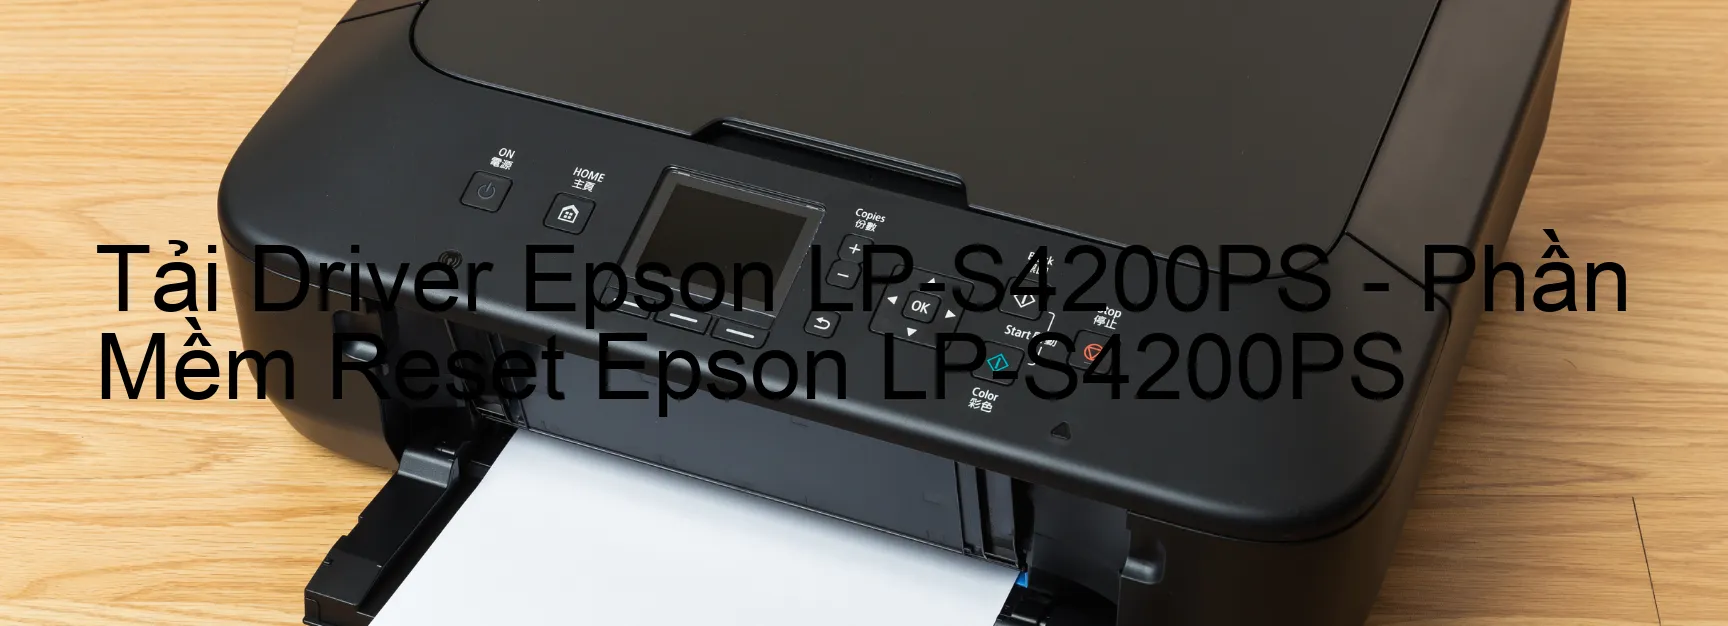 Driver Epson LP-S4200PS, Phần Mềm Reset Epson LP-S4200PS